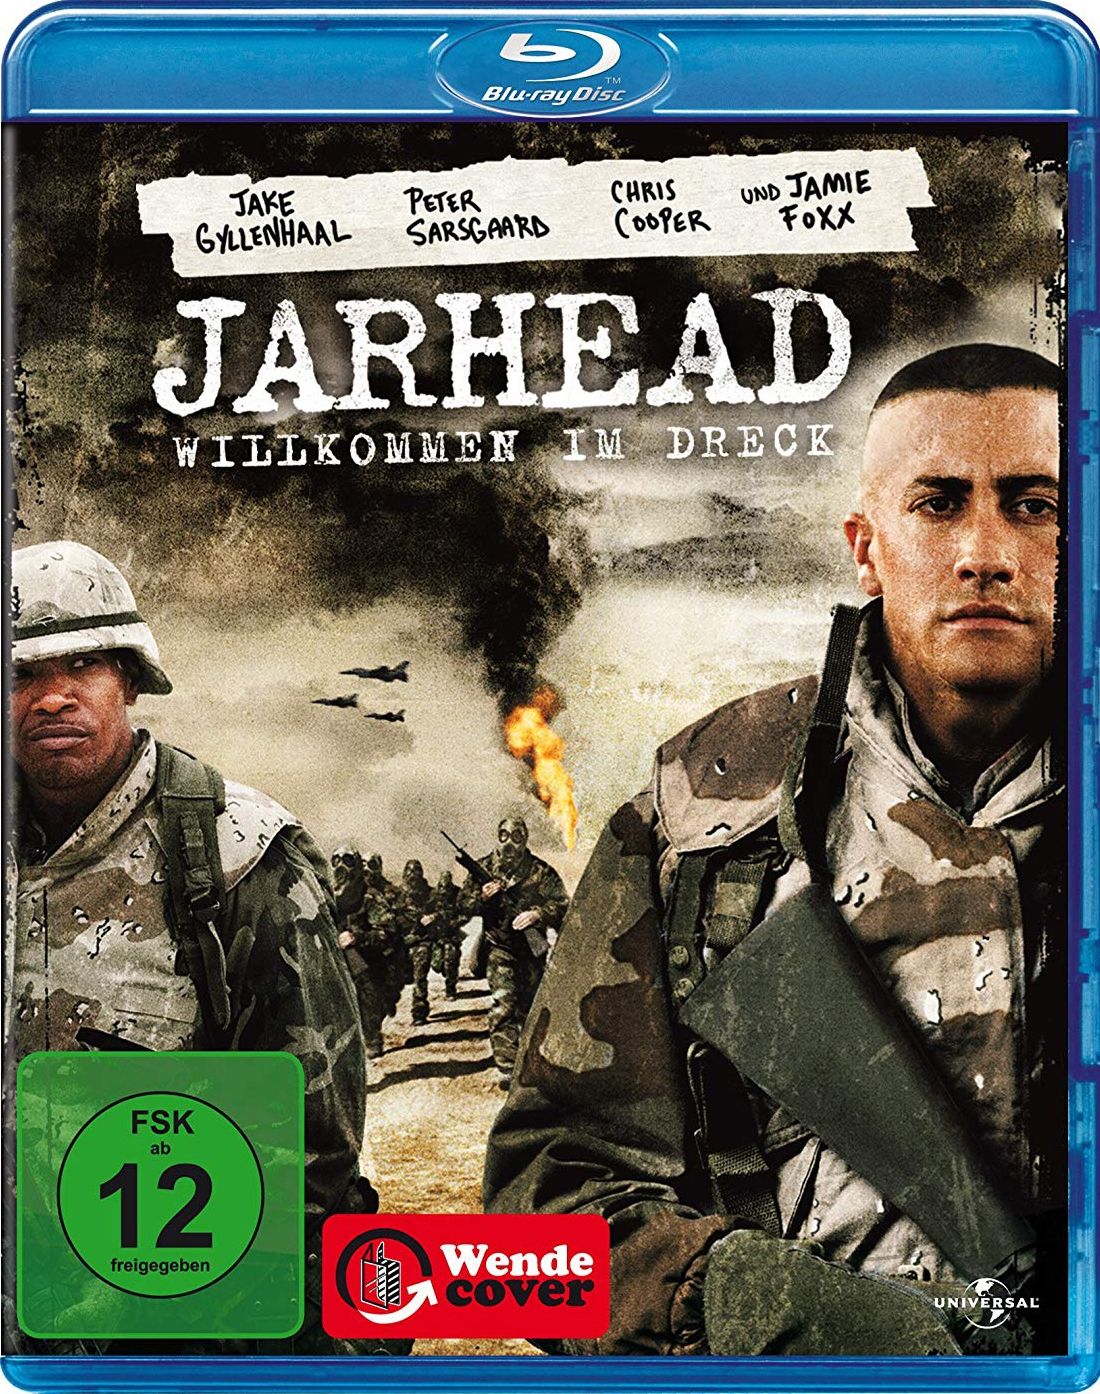 Jarhead - Willkommen im Dreck (BLURAY)